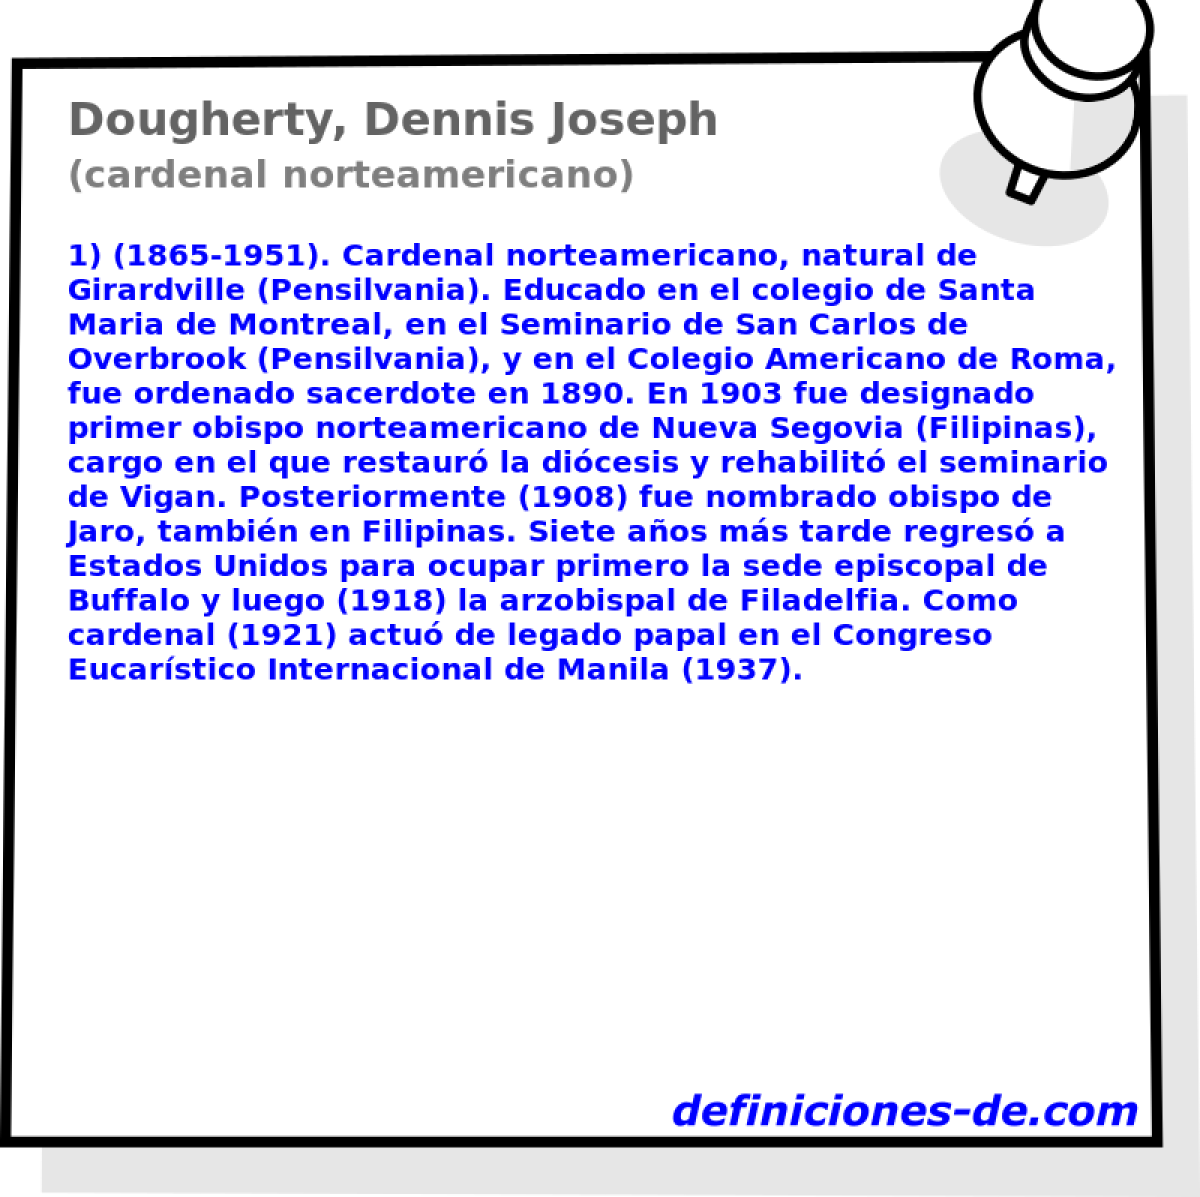 Dougherty, Dennis Joseph (cardenal norteamericano)